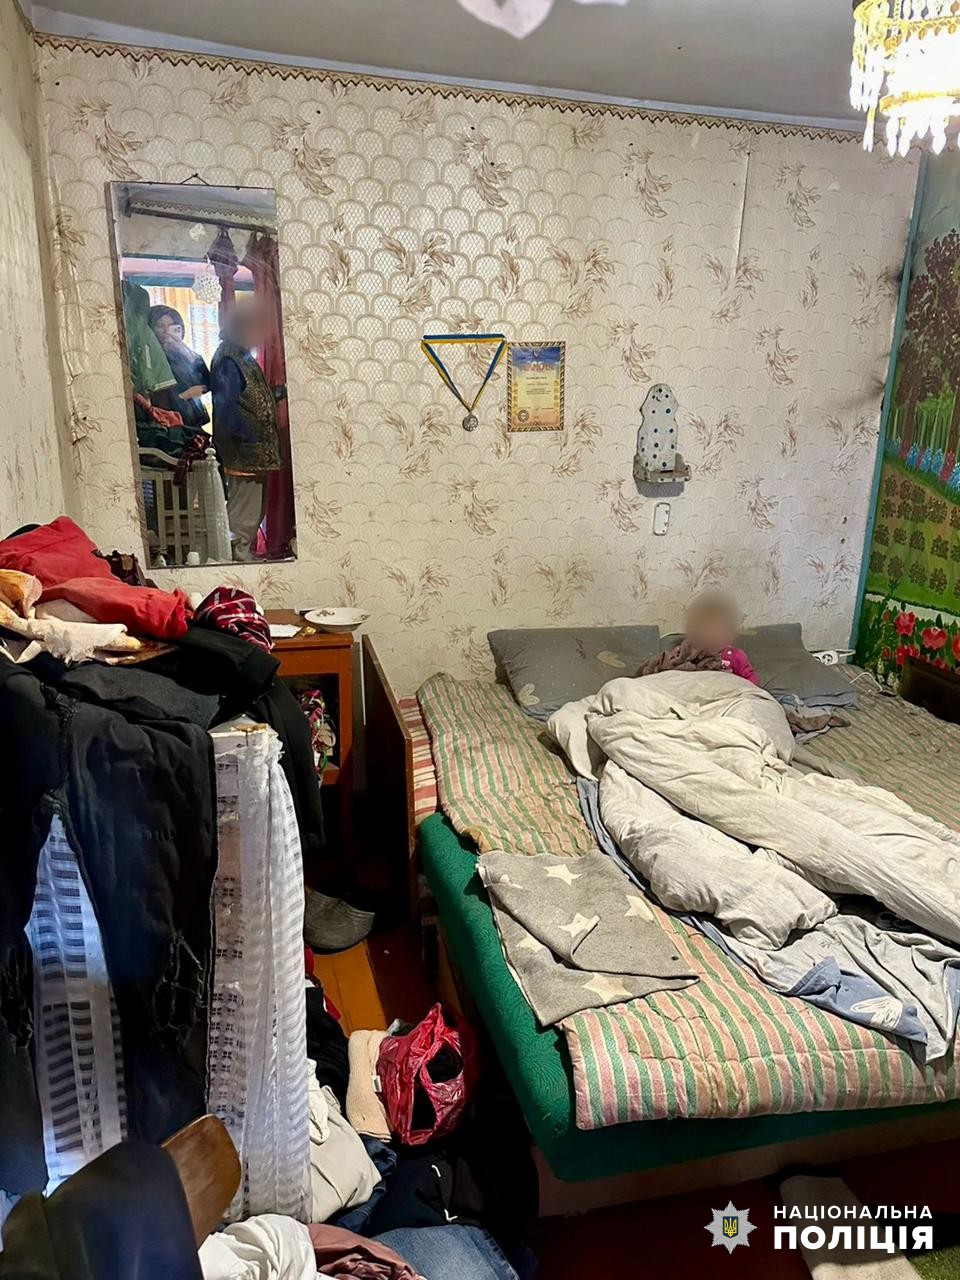 Антисанитария, голод и преступное нарушение родительских обязанностей: в Болградском районе проверили неблагополучные семьи